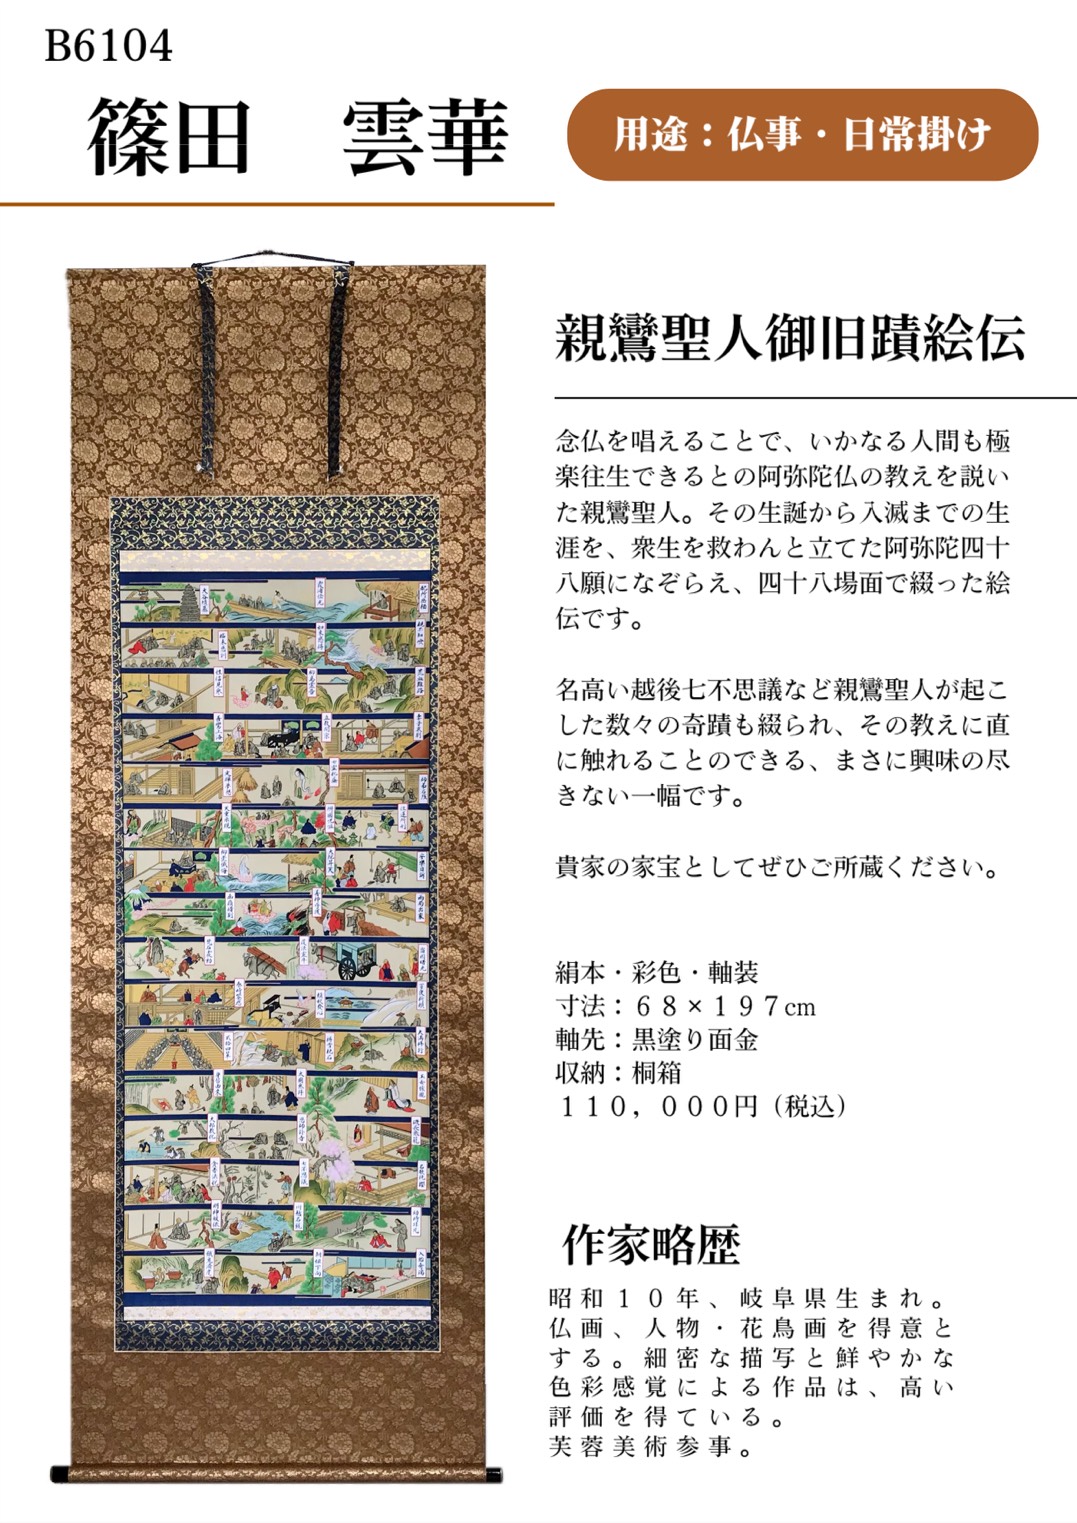 日本の家庭行事「葬祭」 | 岐阜の掛軸(掛け軸)メーカー偕拓堂アート